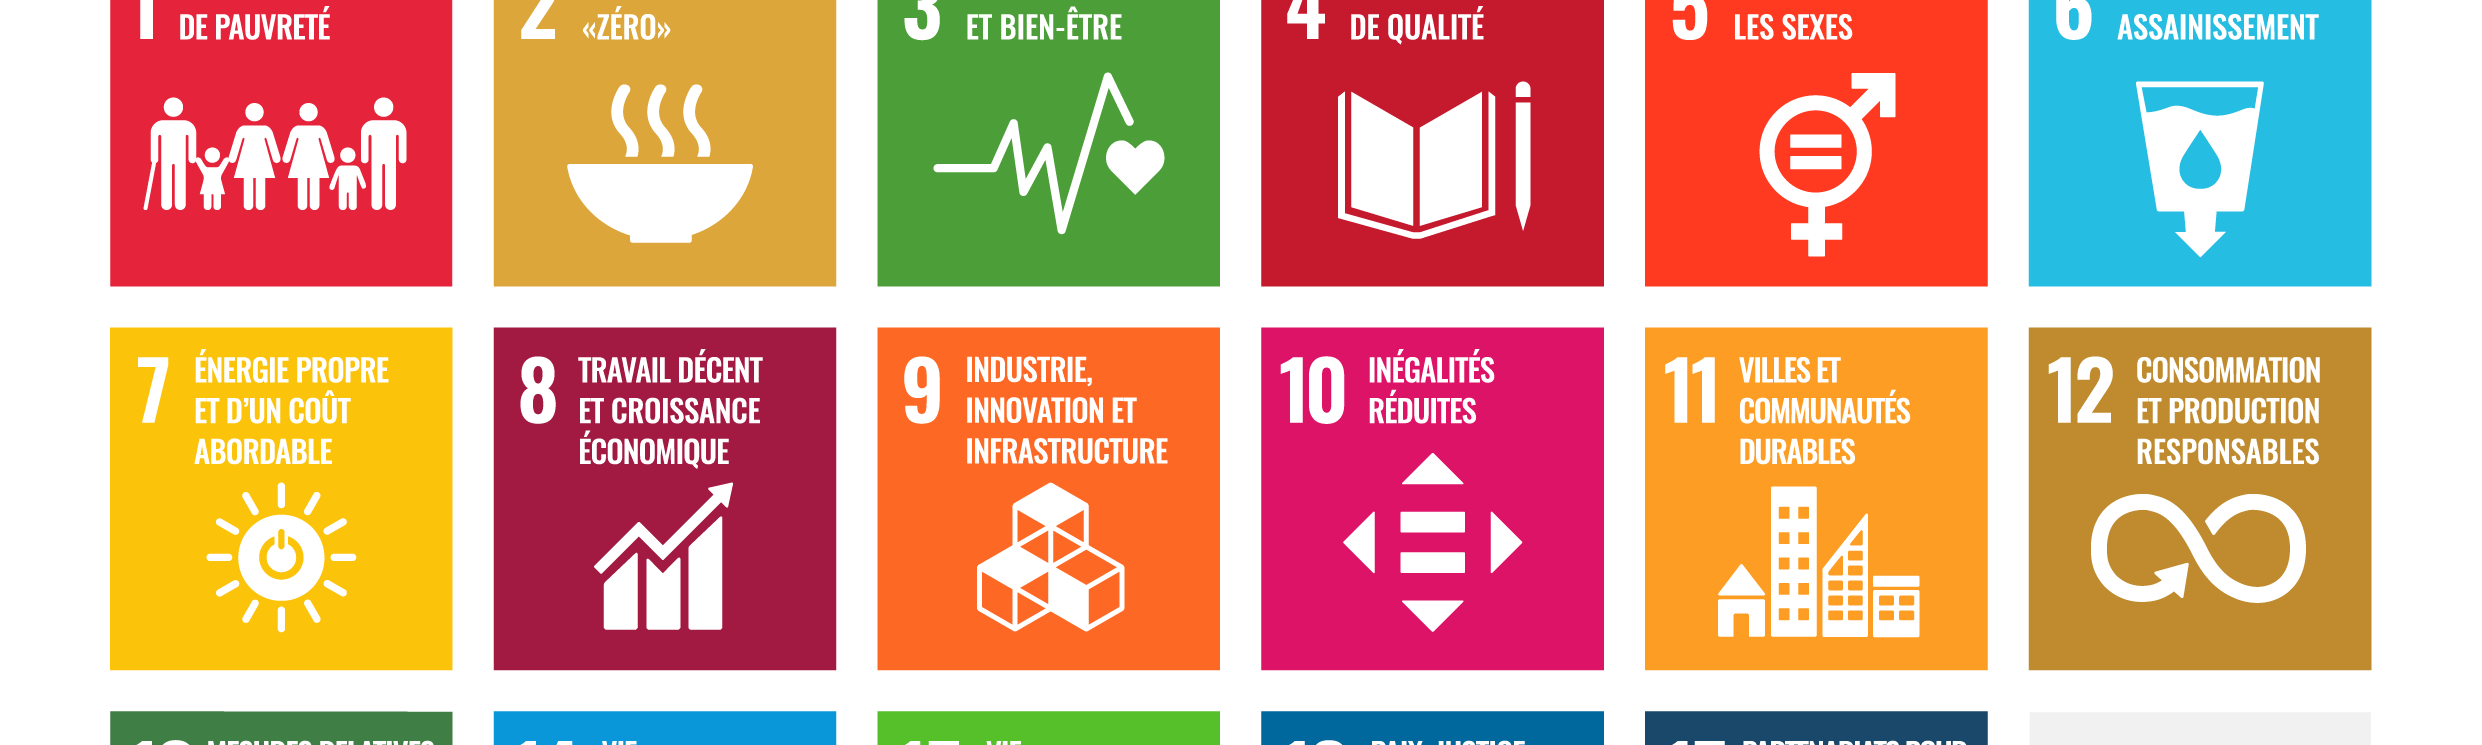 17 Objectifs de Développement Durable ONU